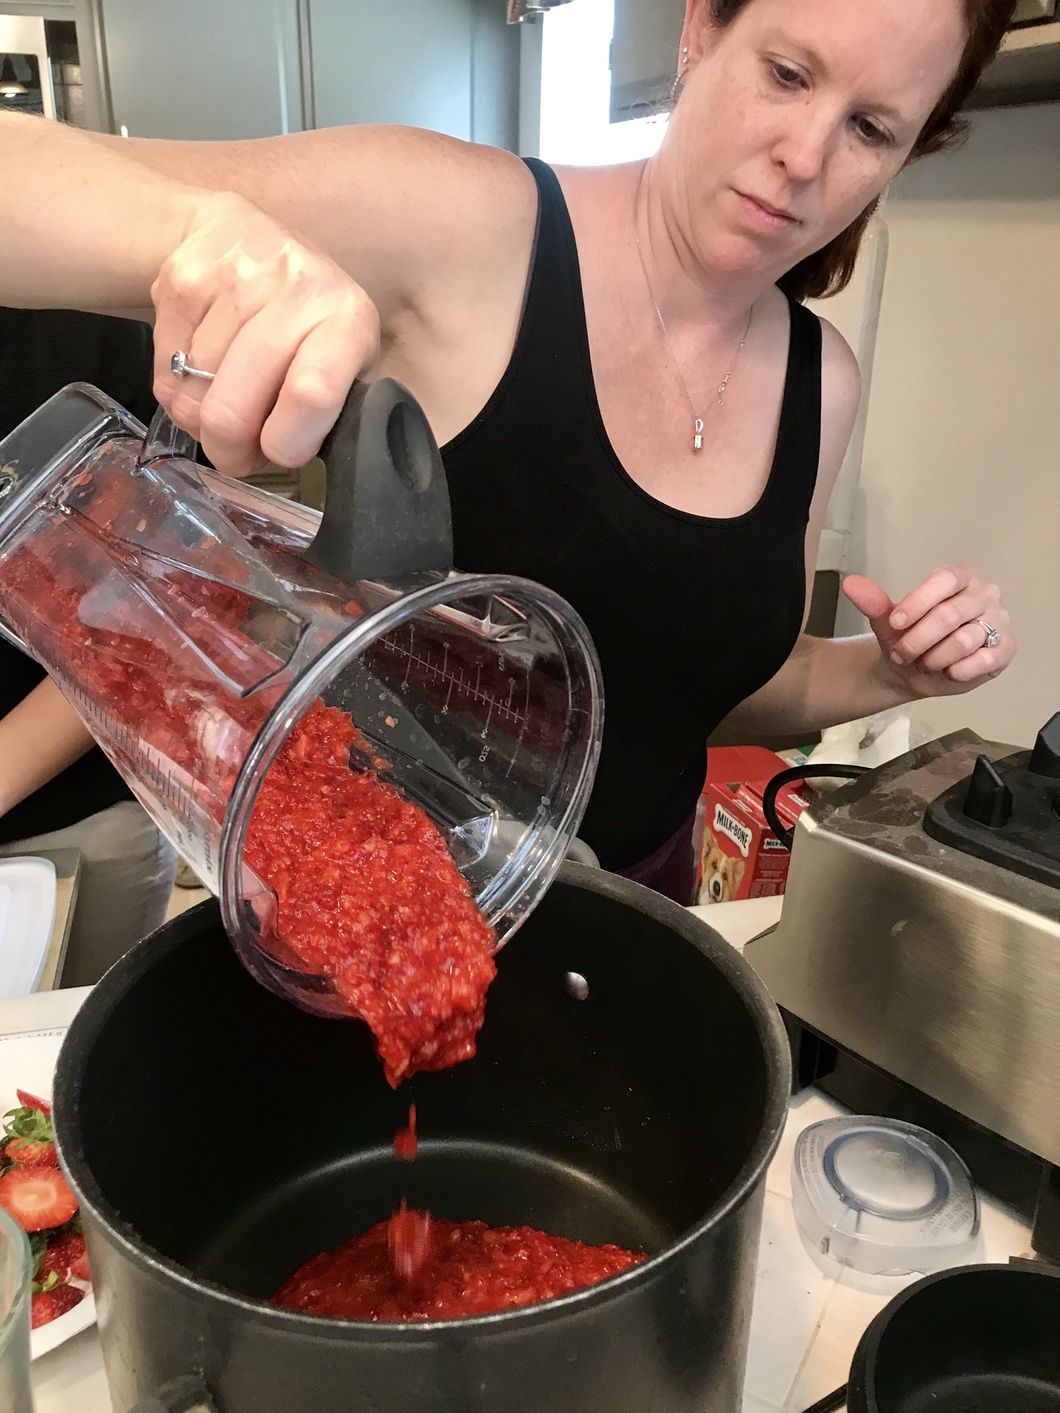 Homemade Strawberry Jame Recipe #strawberries #strawberryjam #recipe #homemade